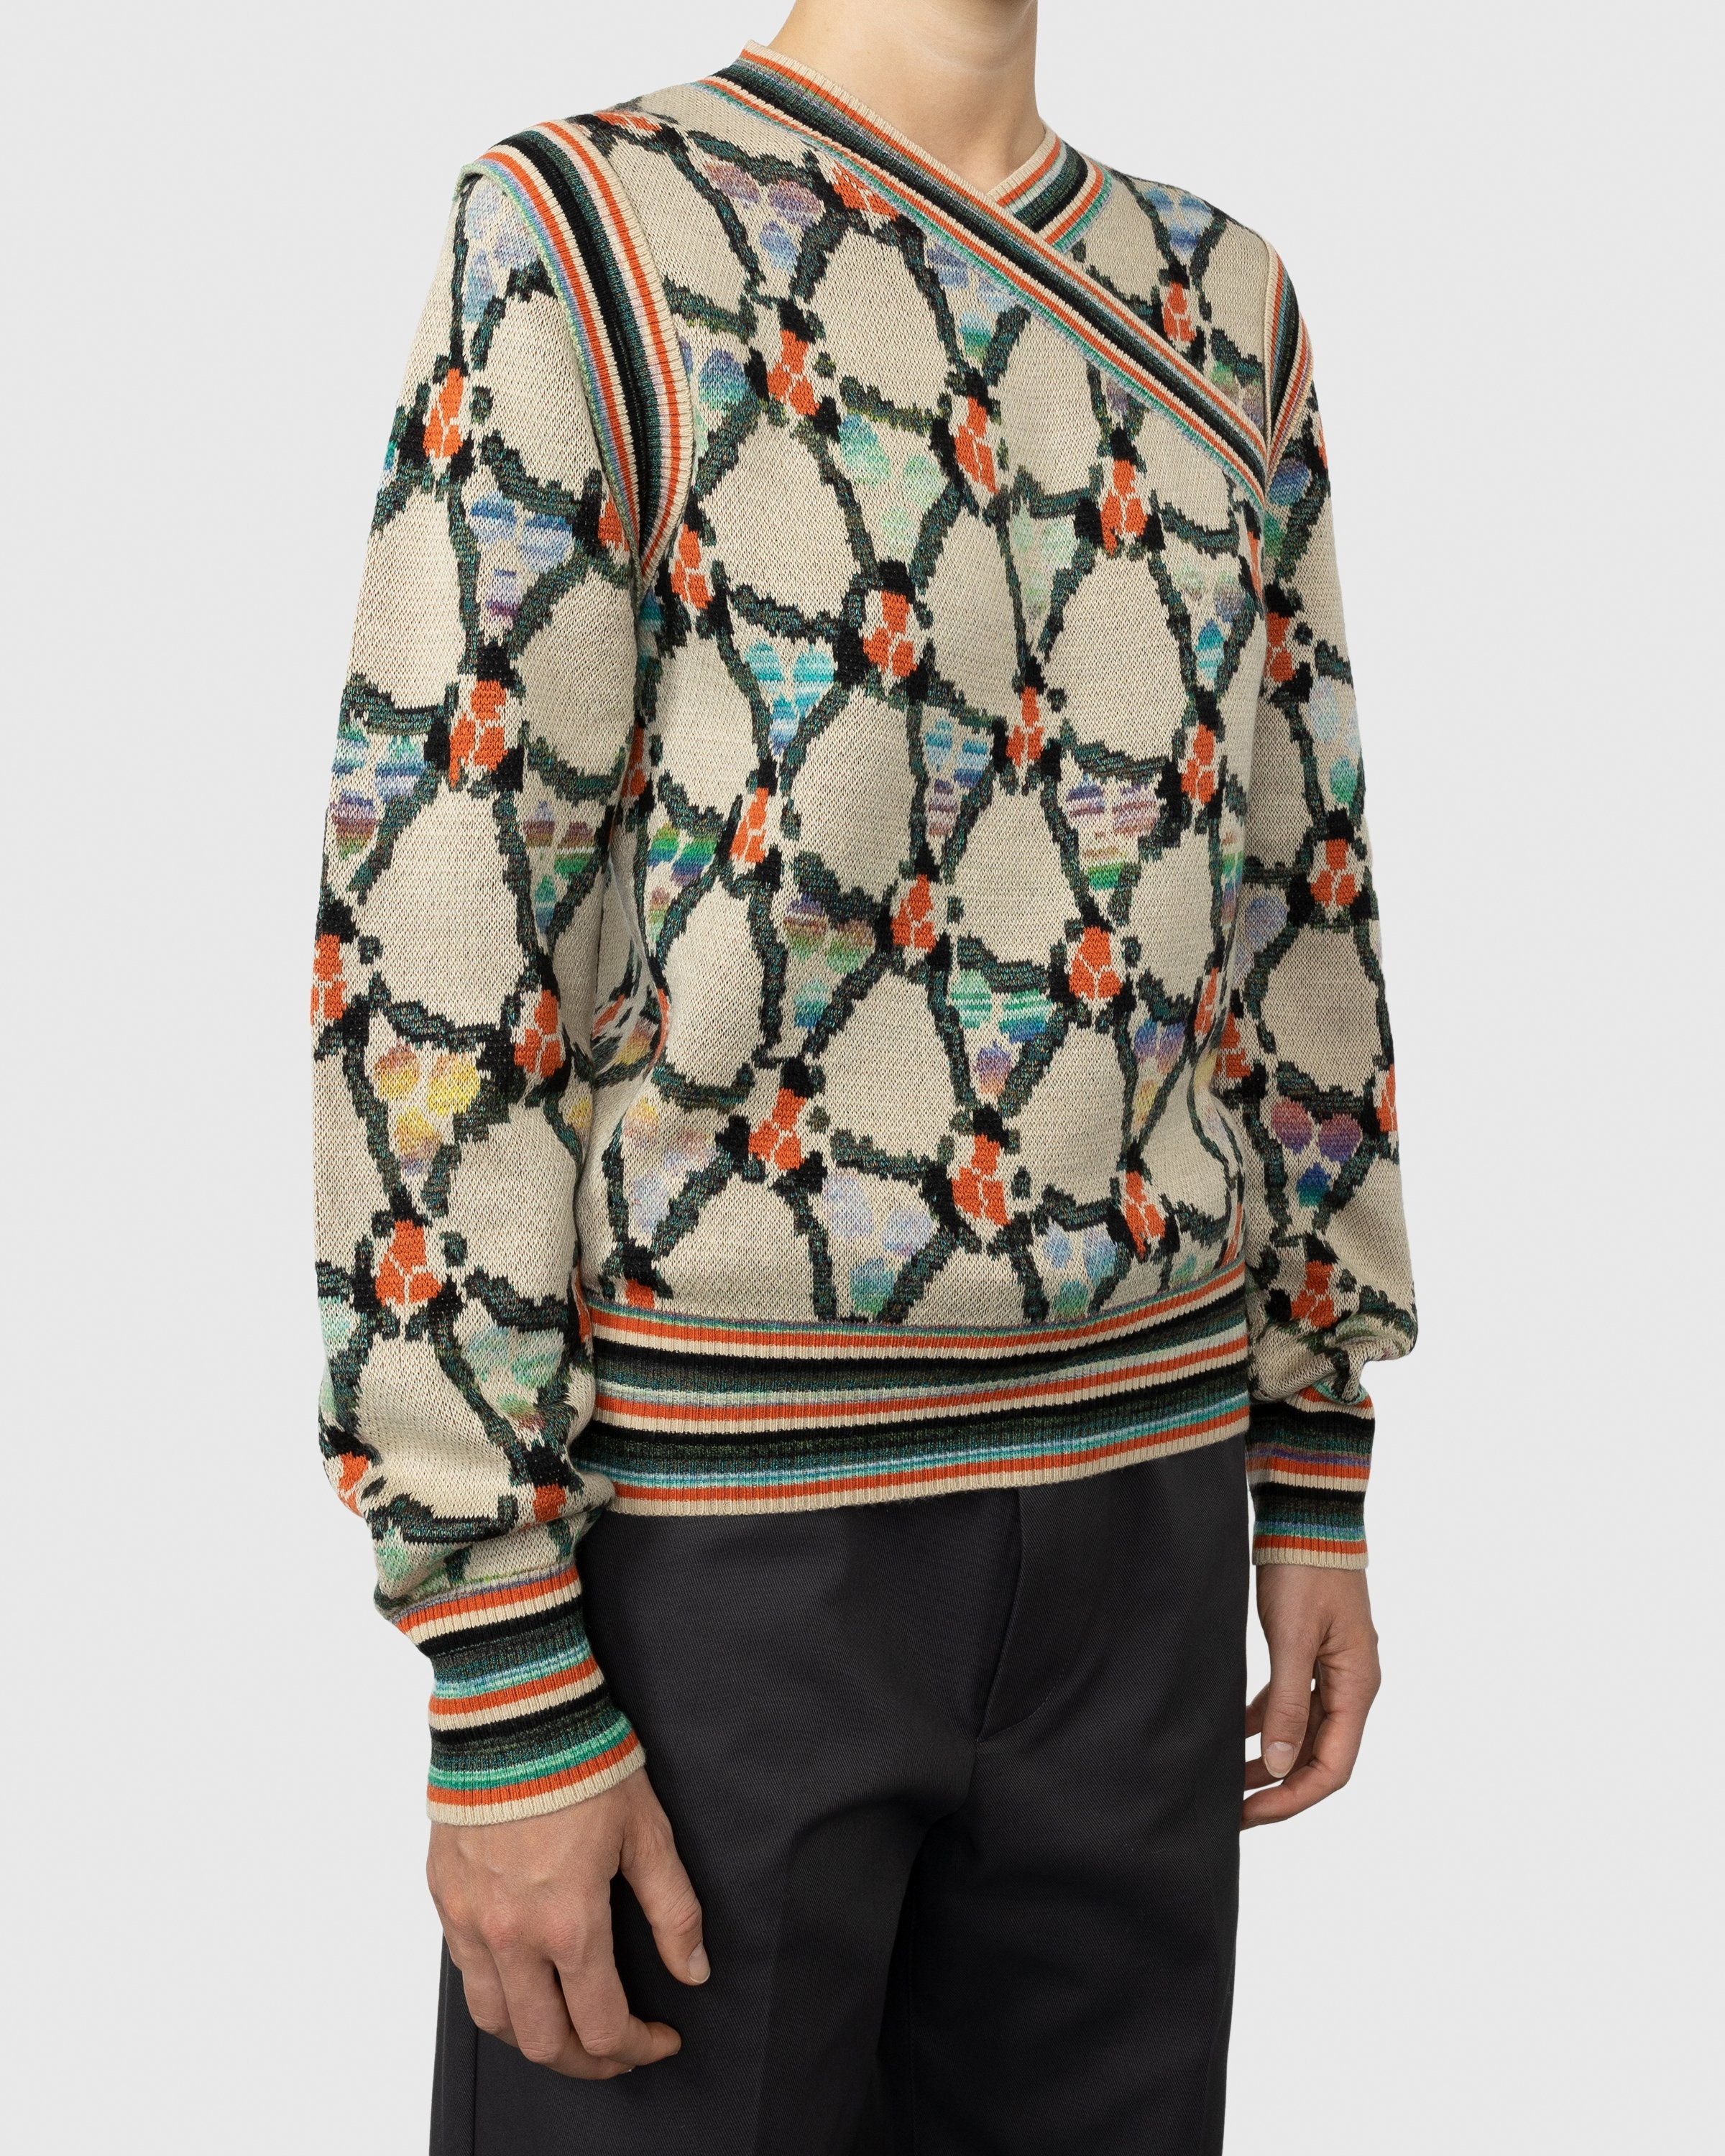 Acne Studios – Wrapped Sweater Beige - V-Necks Knitwear - Multi - Image 3